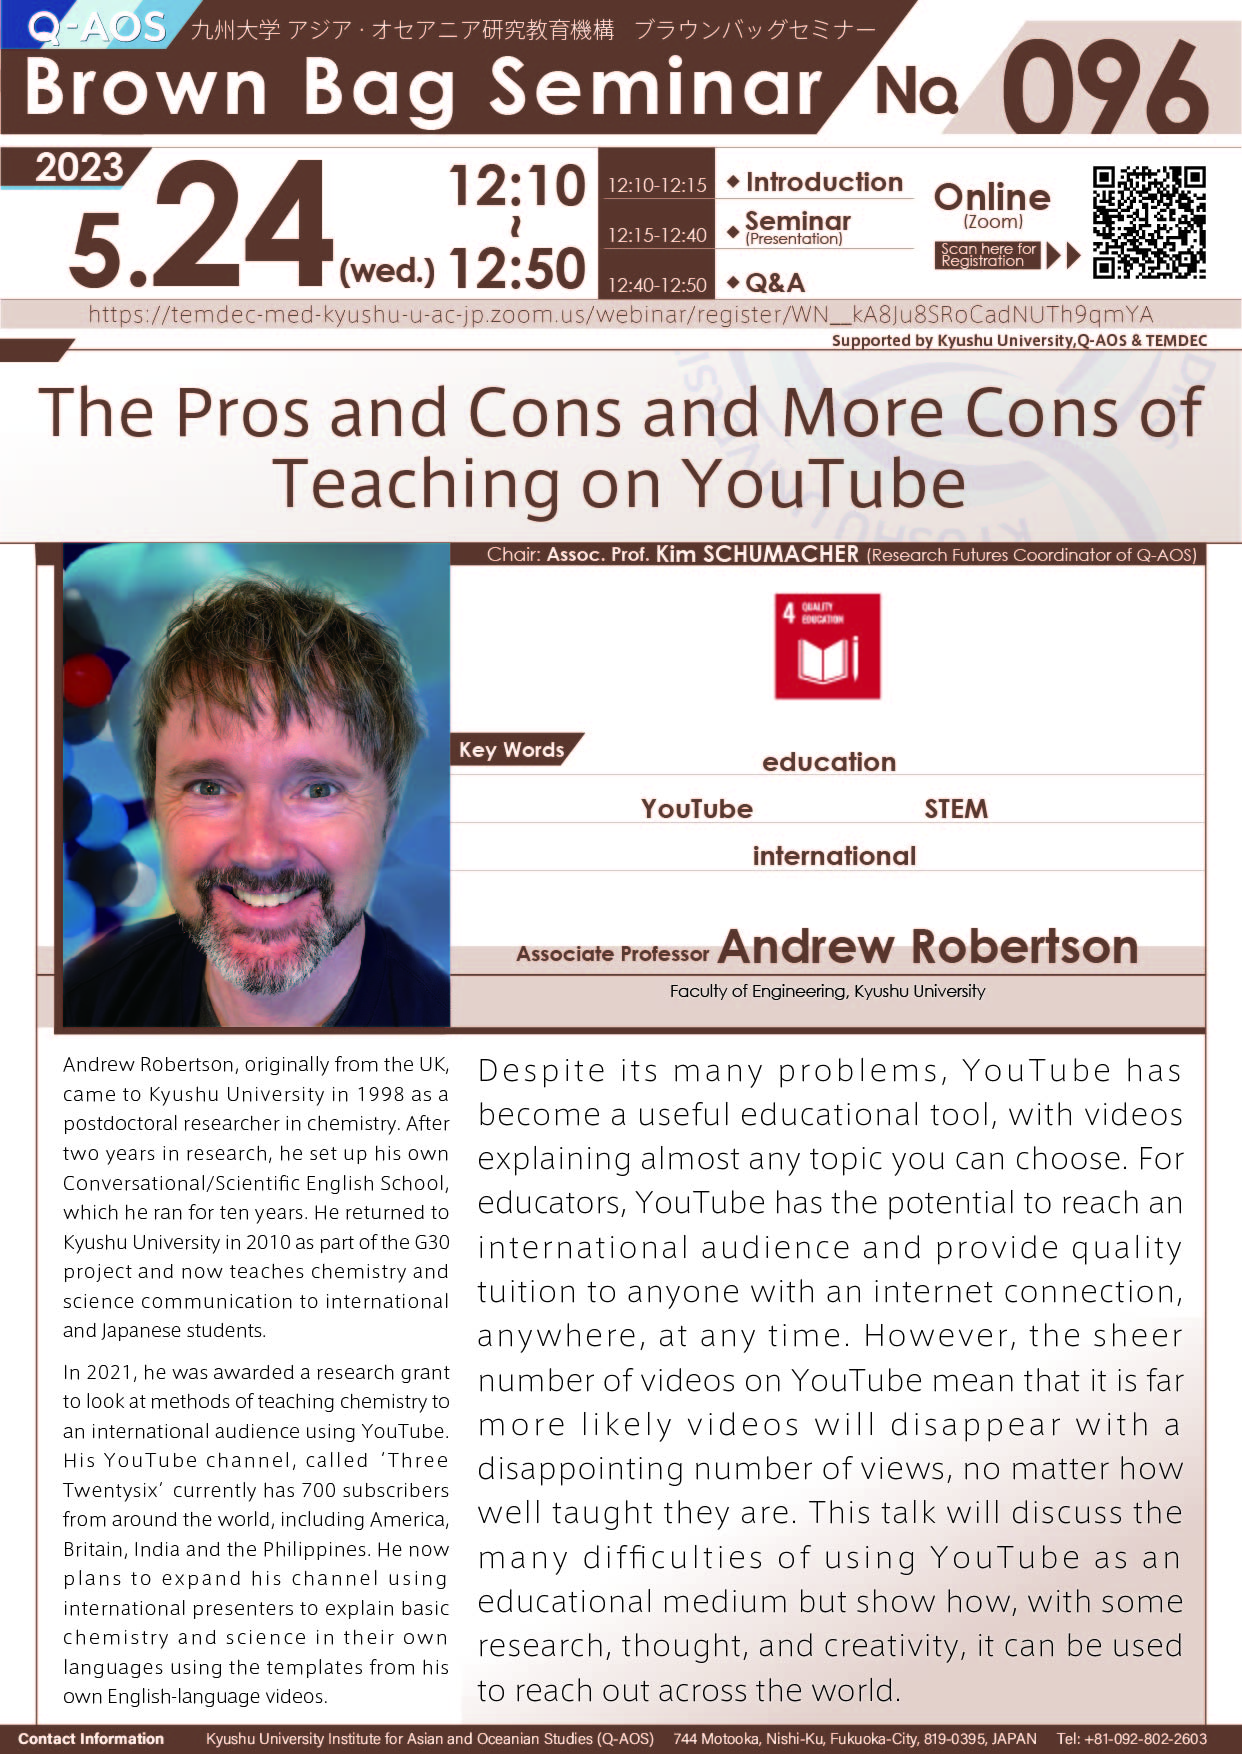 アイキャッチ画像：Q-AOS Brown Bag Seminar Series The 96th Seminar “The Pros and Cons and More Cons of Teaching on YouTube”